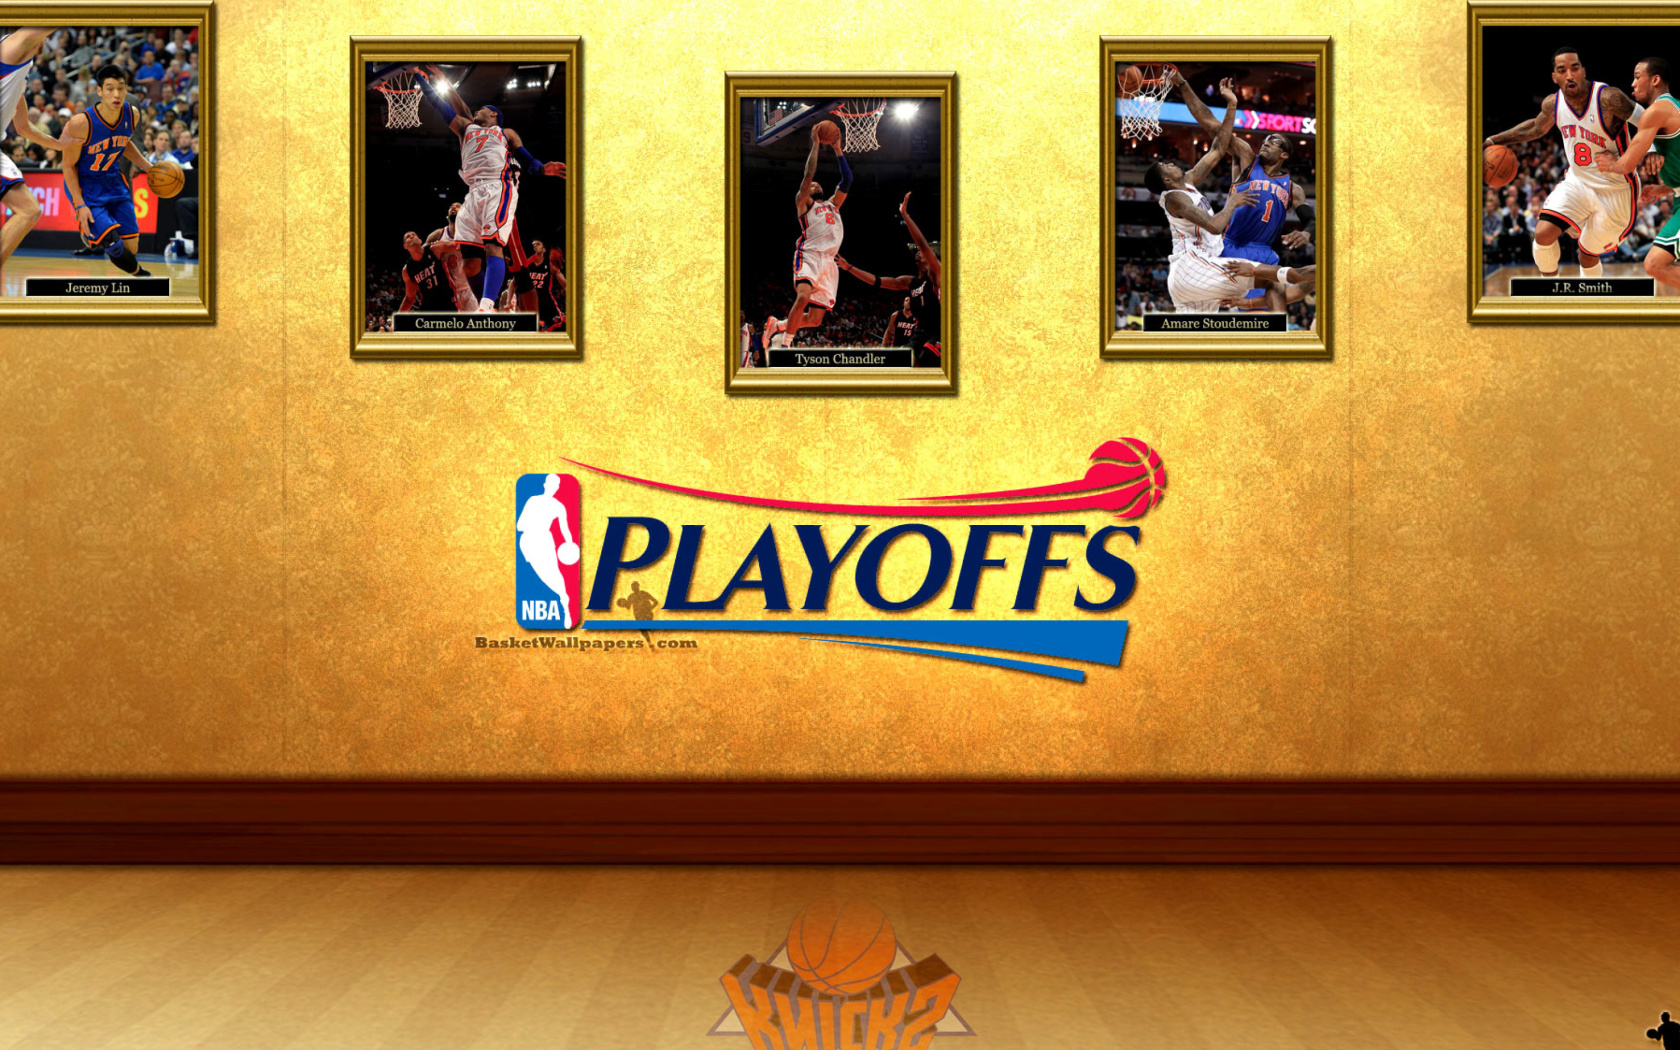 New York Knicks NBA Playoffs wallpaper 1680x1050